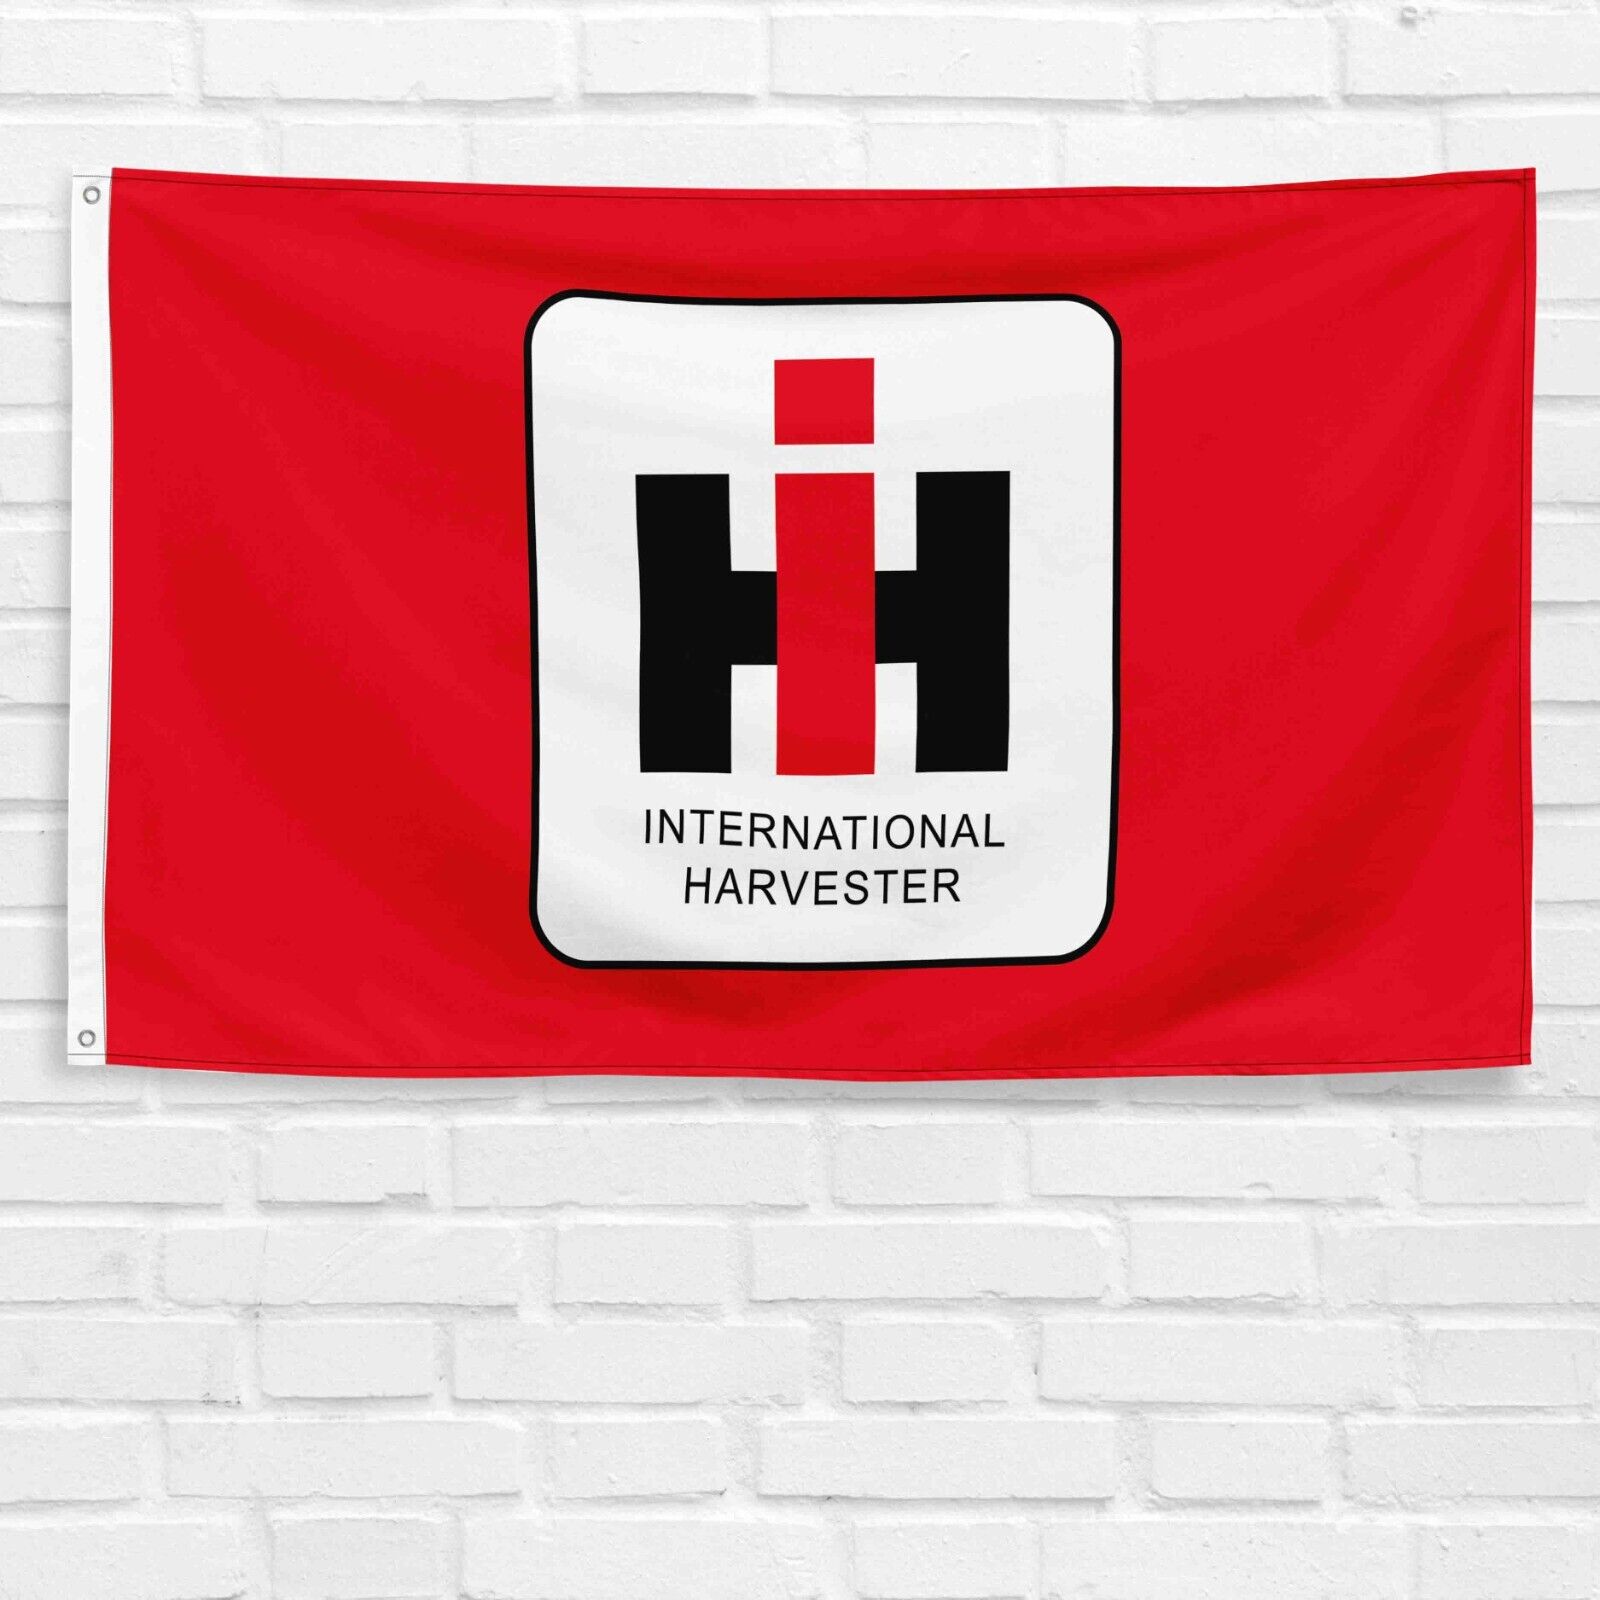 For International Harvester 3x5 ft Banner IH Tractor Farm Equipment Flag